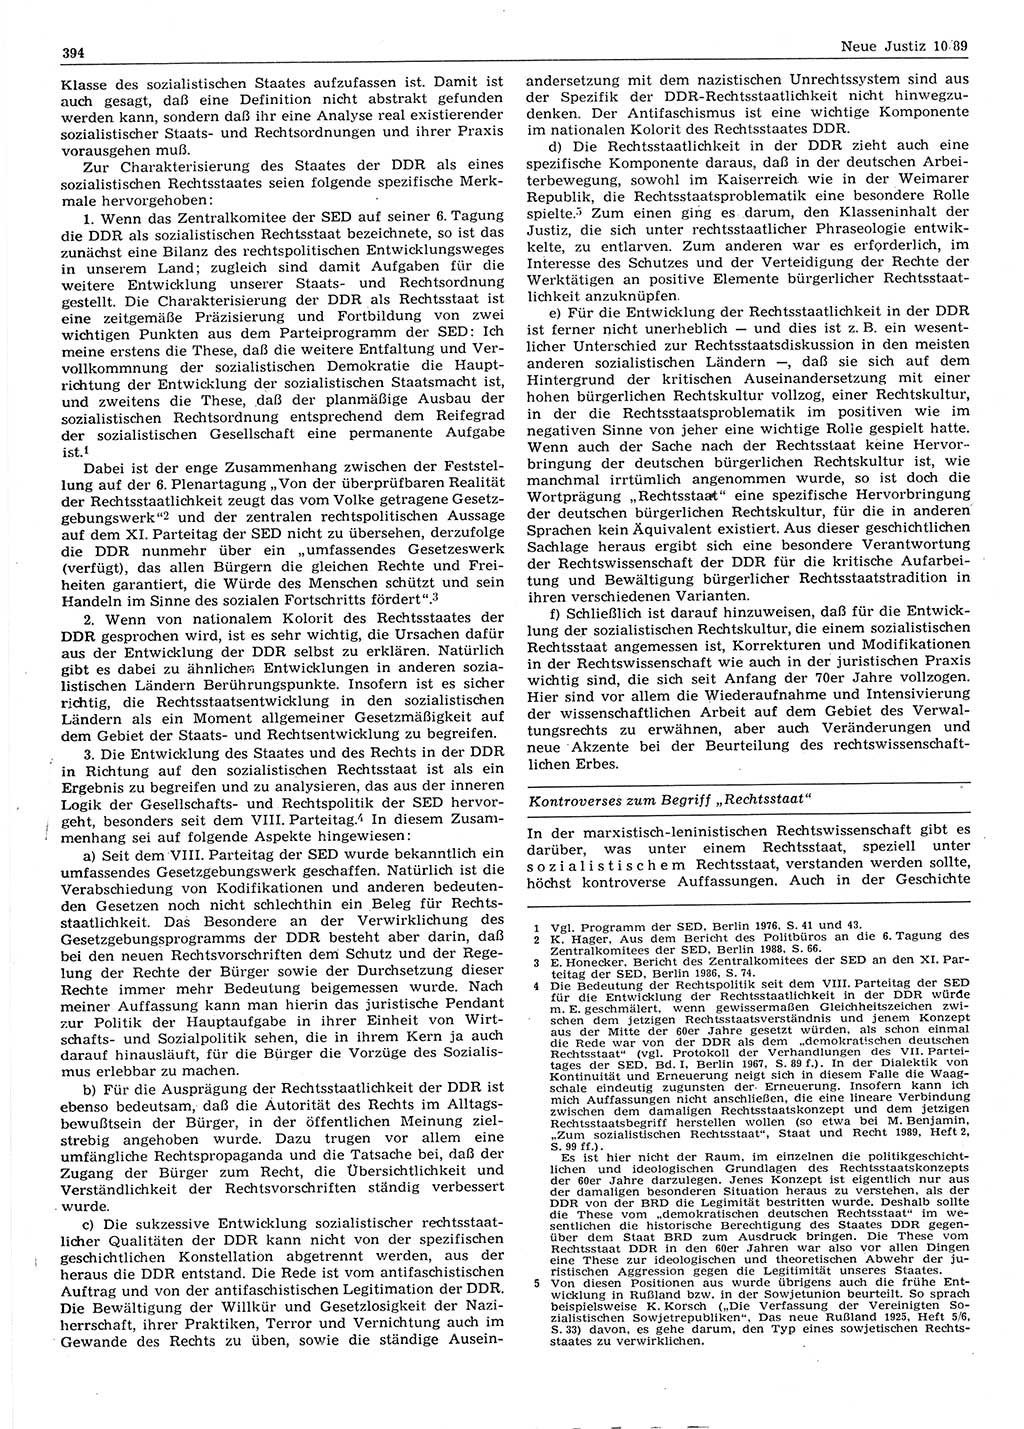 Neue Justiz (NJ), Zeitschrift für sozialistisches Recht und Gesetzlichkeit [Deutsche Demokratische Republik (DDR)], 43. Jahrgang 1989, Seite 394 (NJ DDR 1989, S. 394)